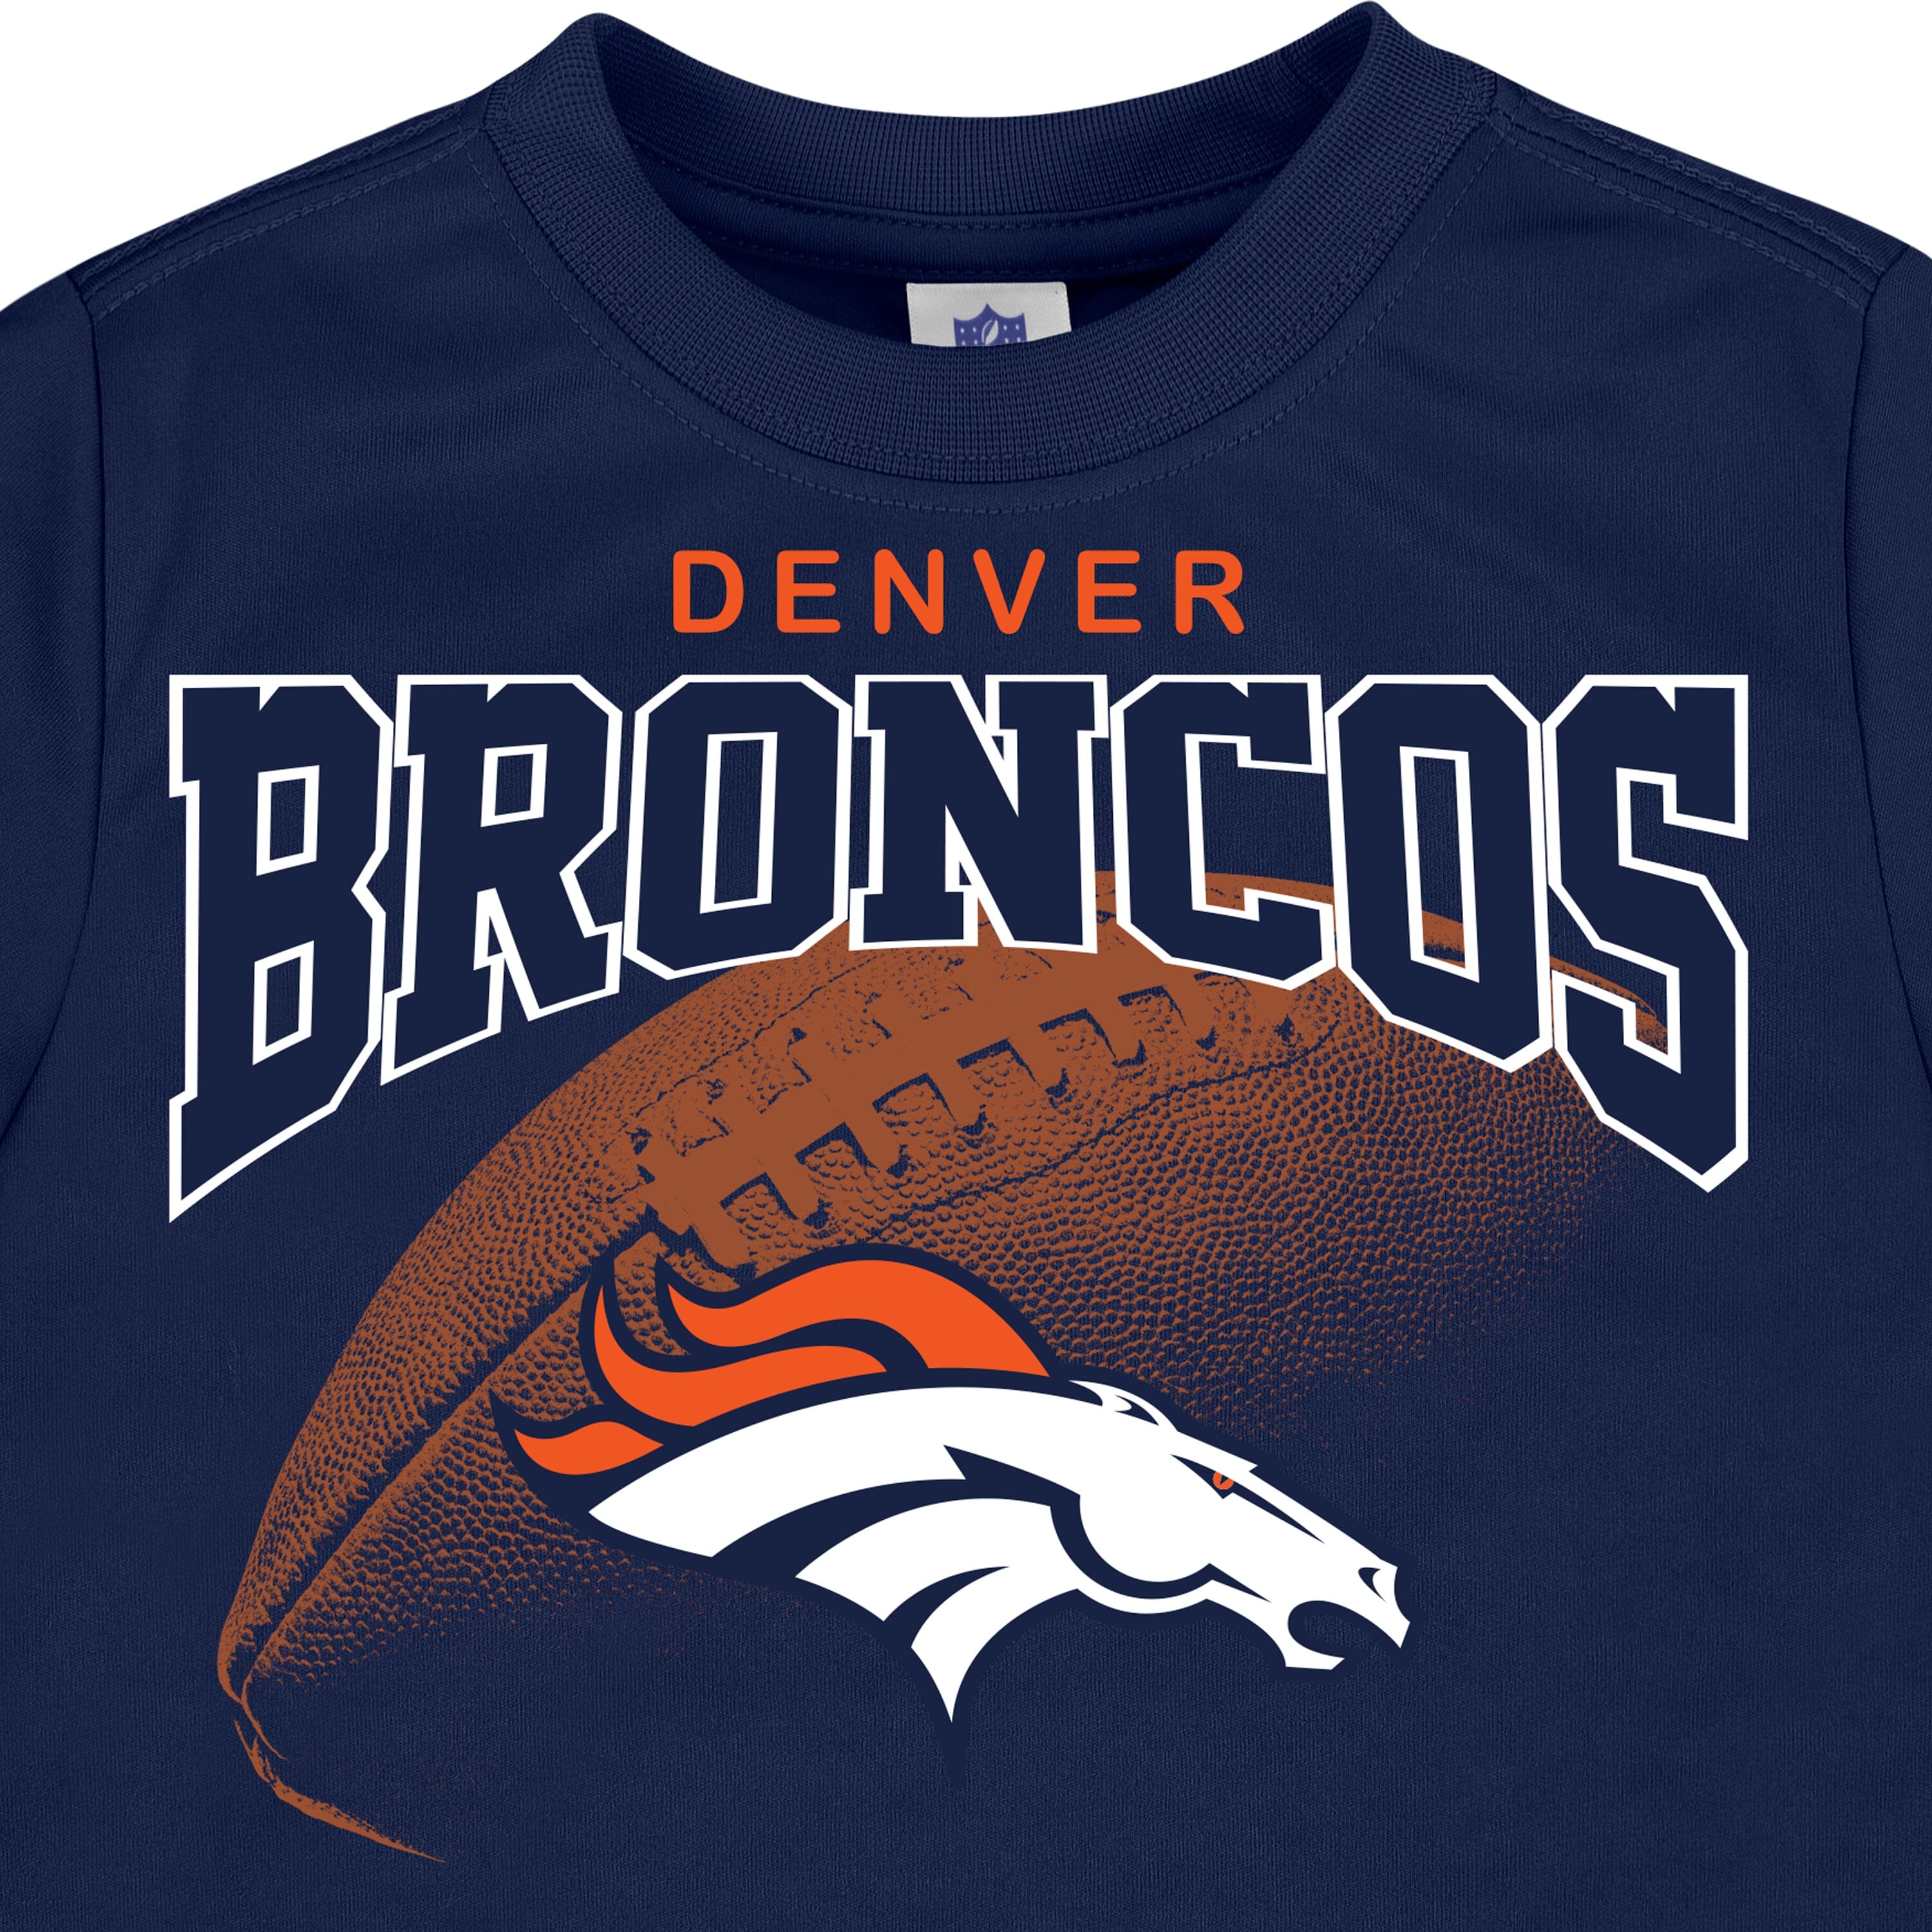 Denver Broncos gear